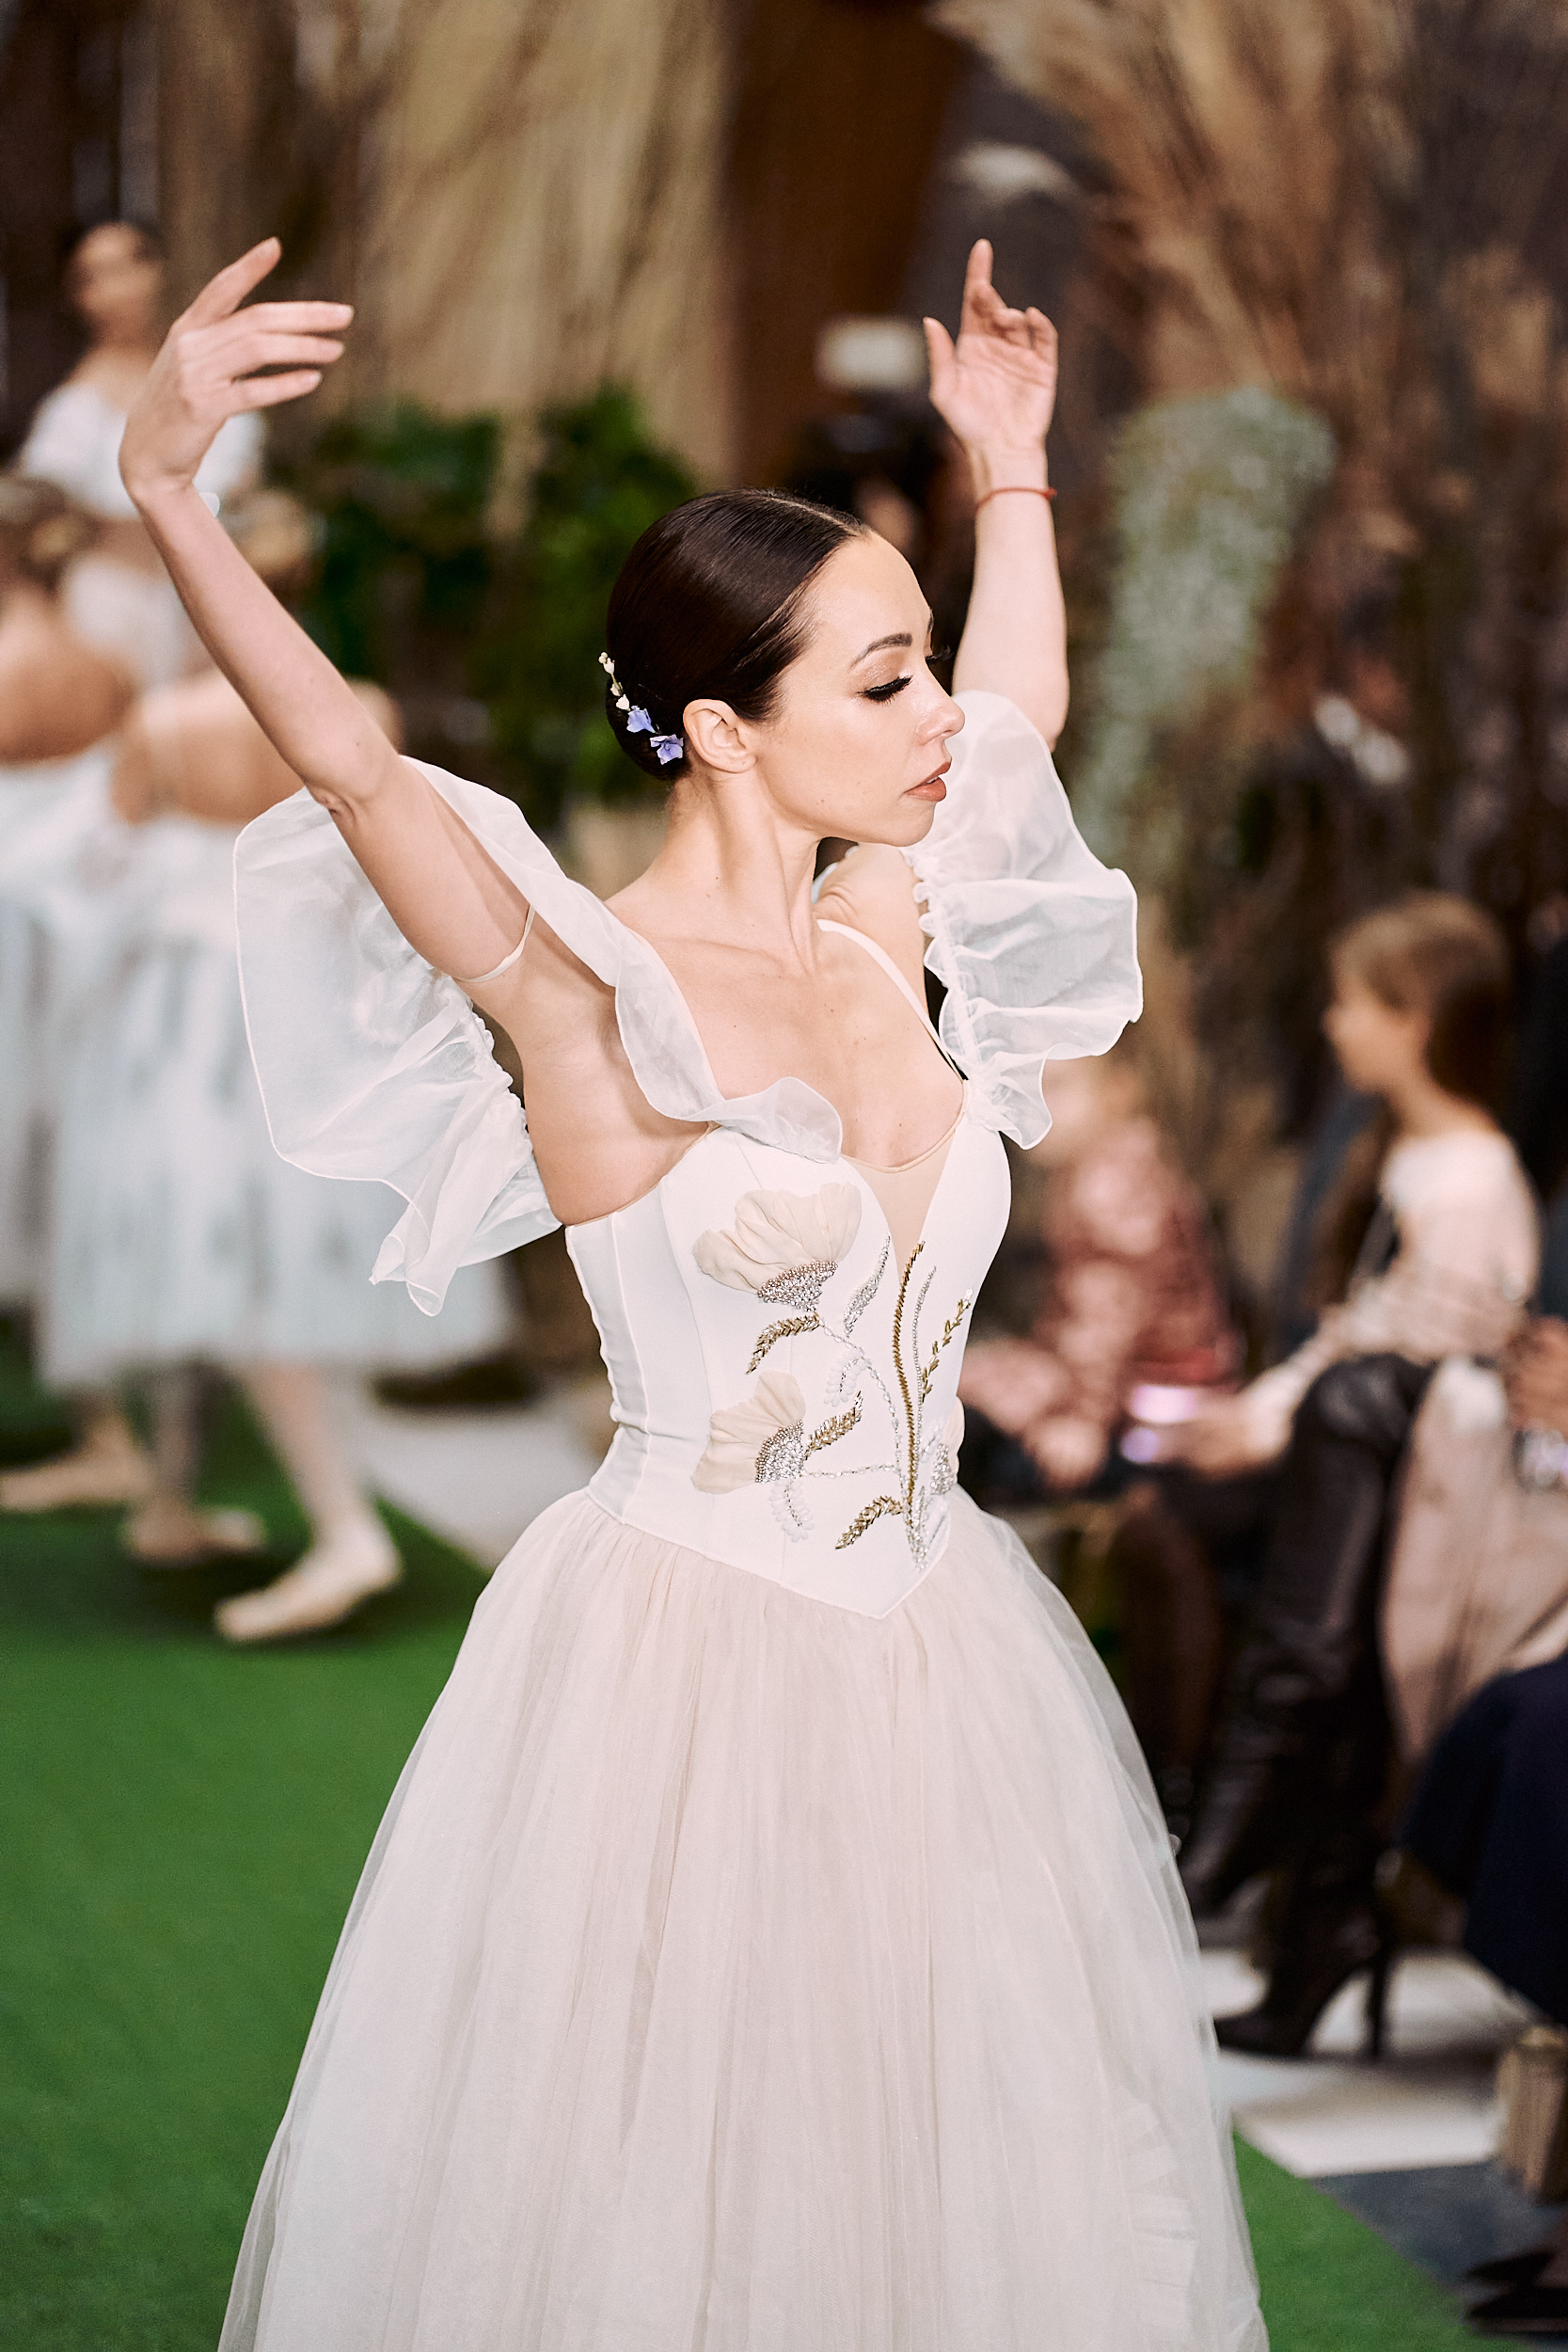 Malva Florea представила новые костюмы для мистического балета «Жизель» с Екатериной Кухар и Александром Стояновым-Фото 4